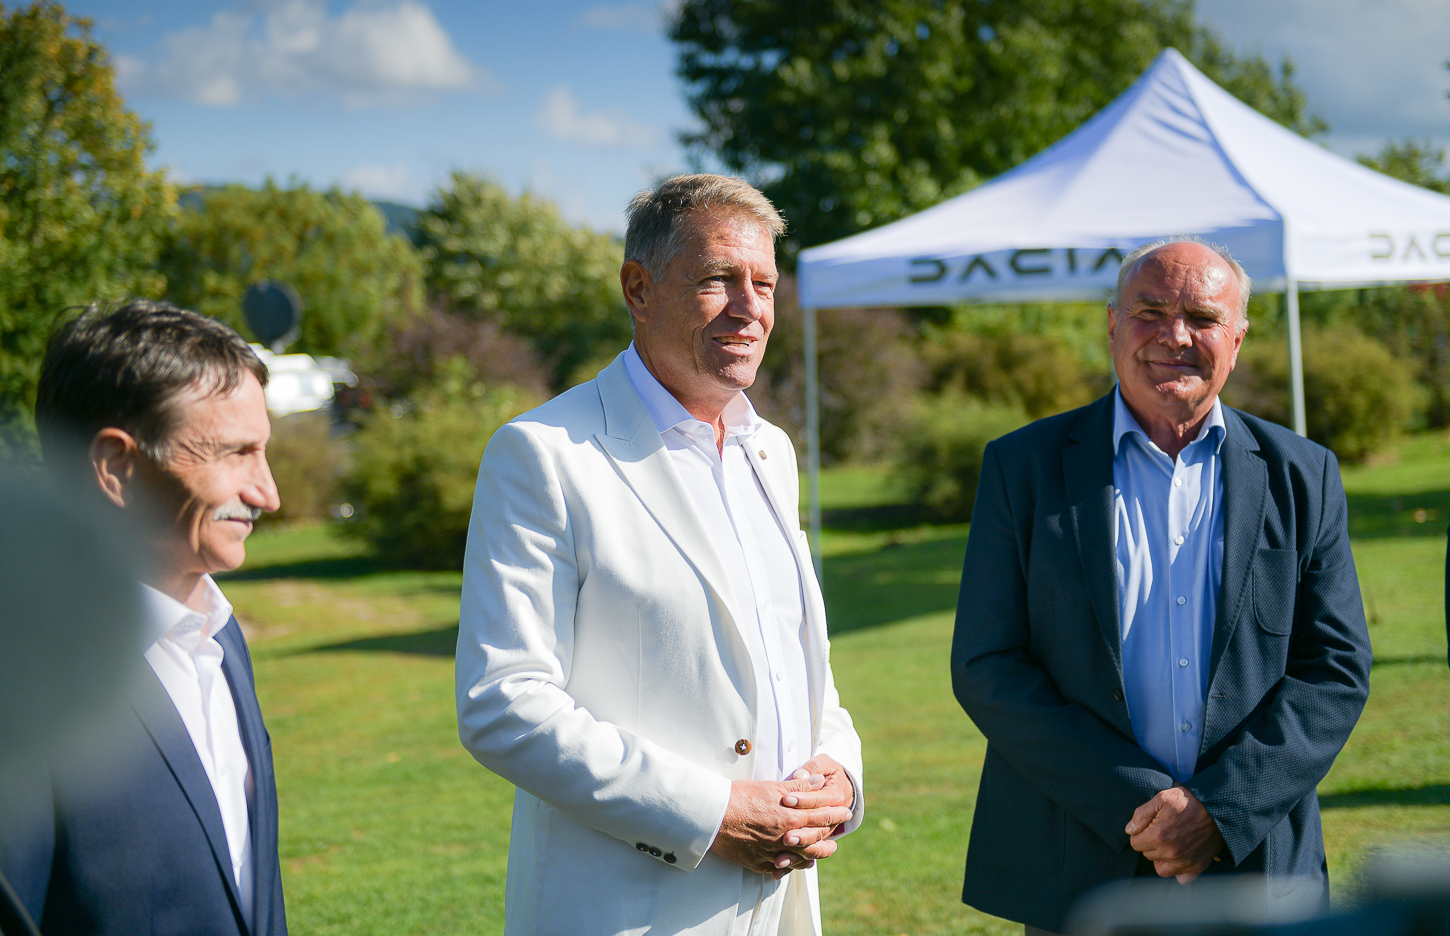 Prietenul de golf lăudat de președintele Iohannis tocmai dă o țeapă Primăriei din Sibiu